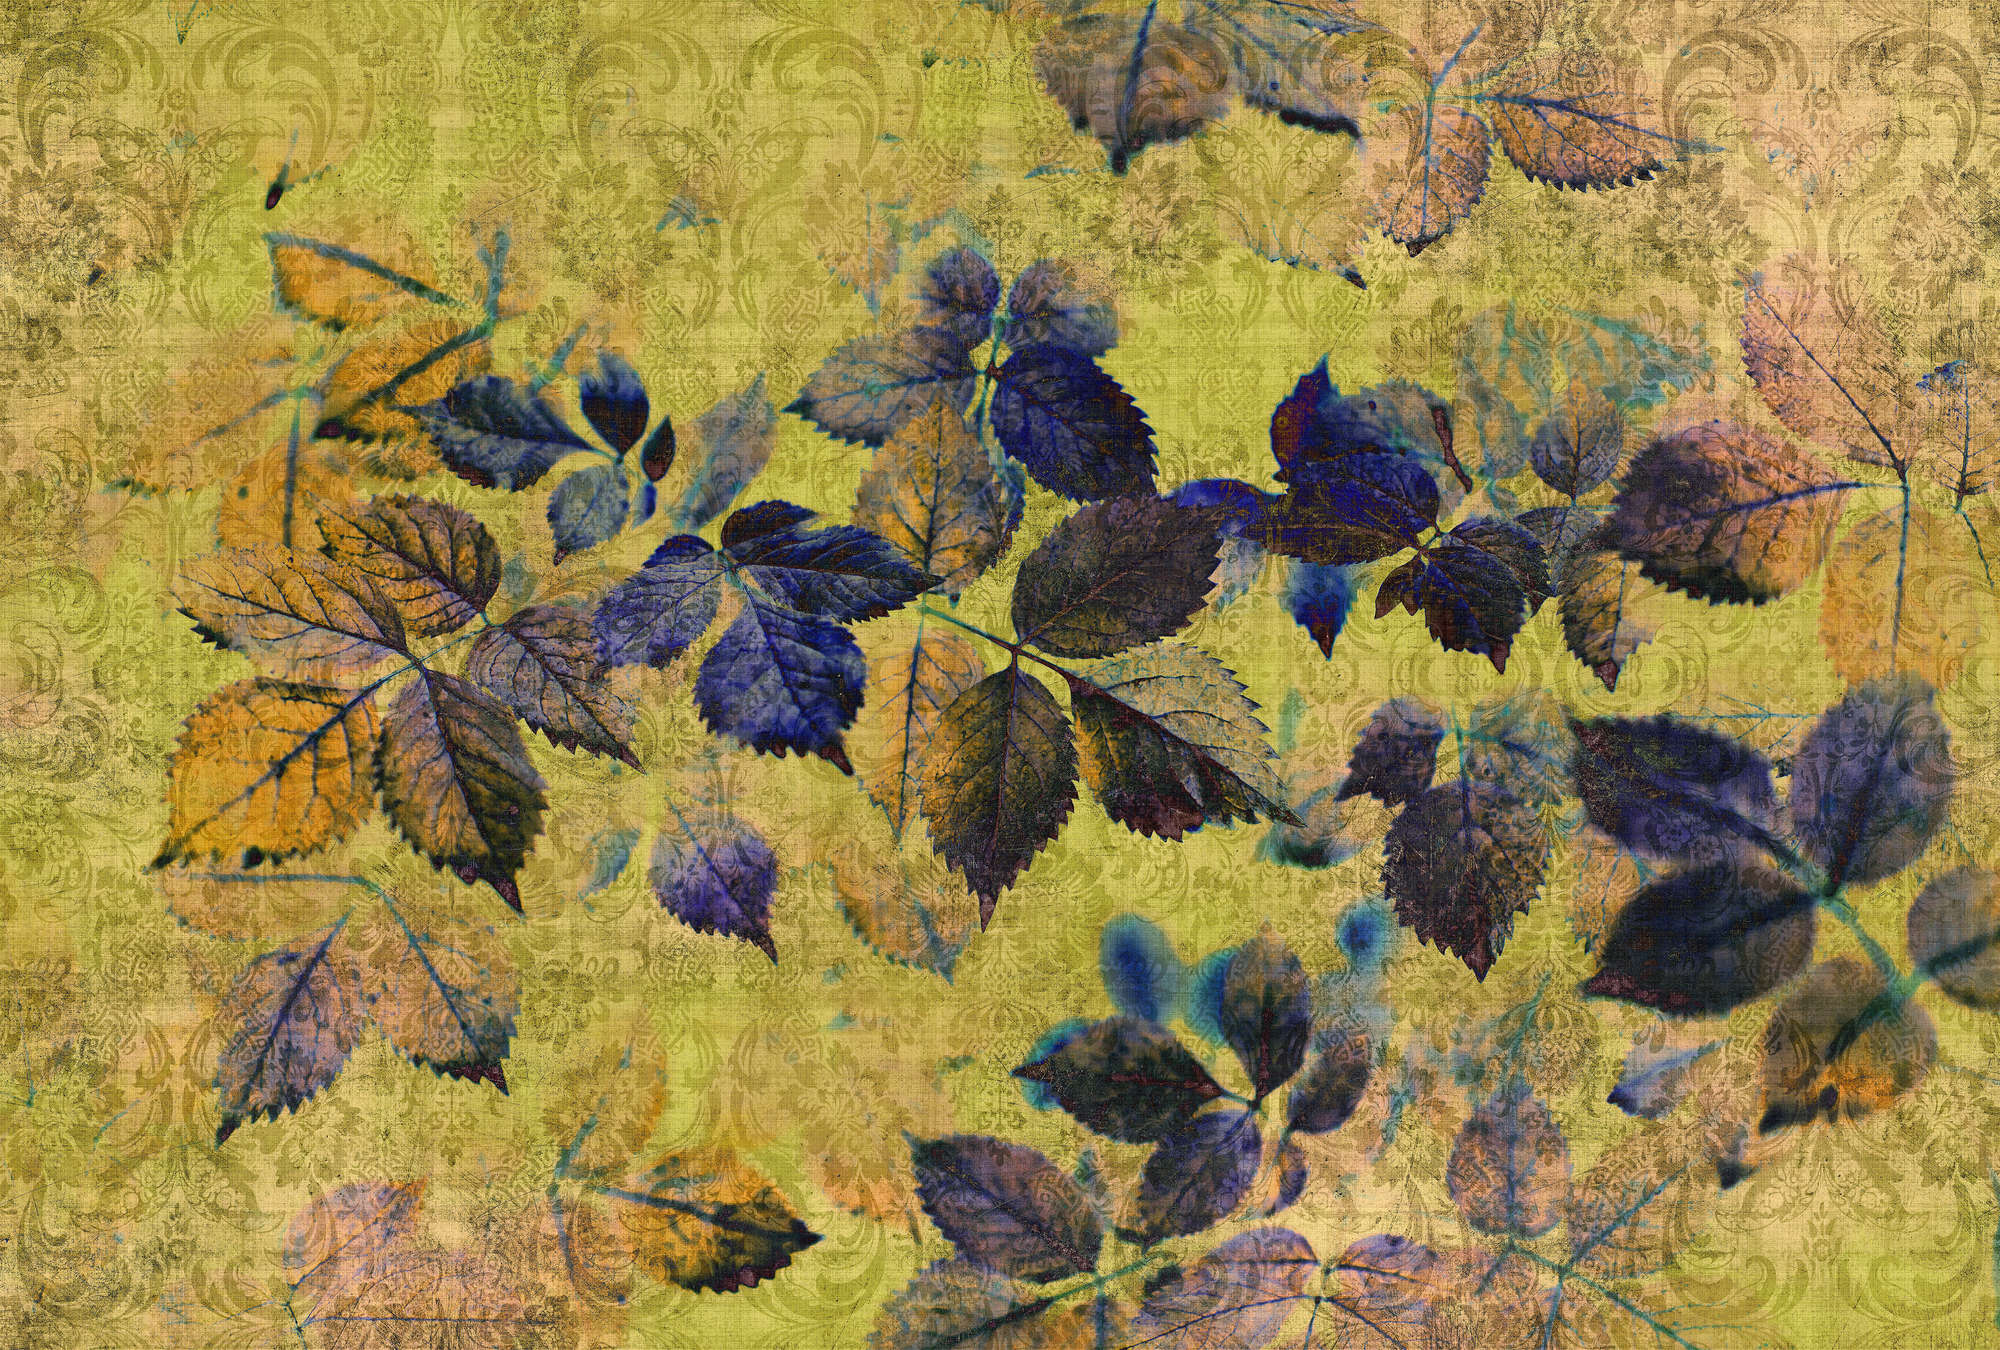             Indian summer 1 - Fotomurali con foglie e ornamenti in lino naturale - Giallo, Arancione | Natura qualita consistenza in tessuto non tessuto
        